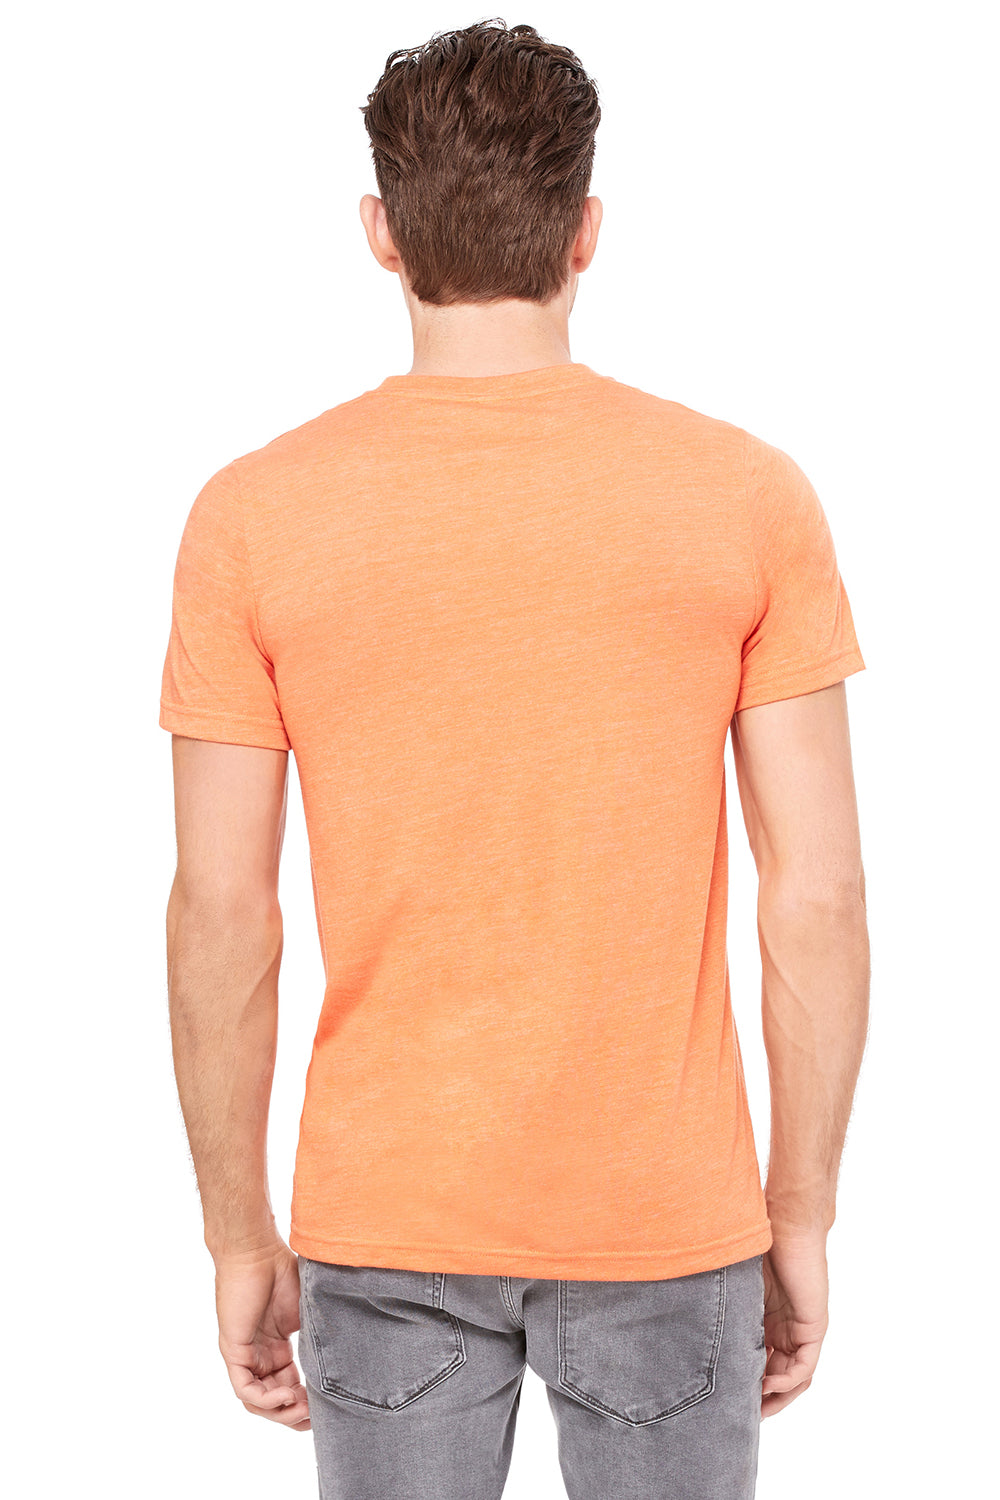 Bella + Canvas 3415C Mens Short Sleeve V-Neck T-Shirt Orange Back